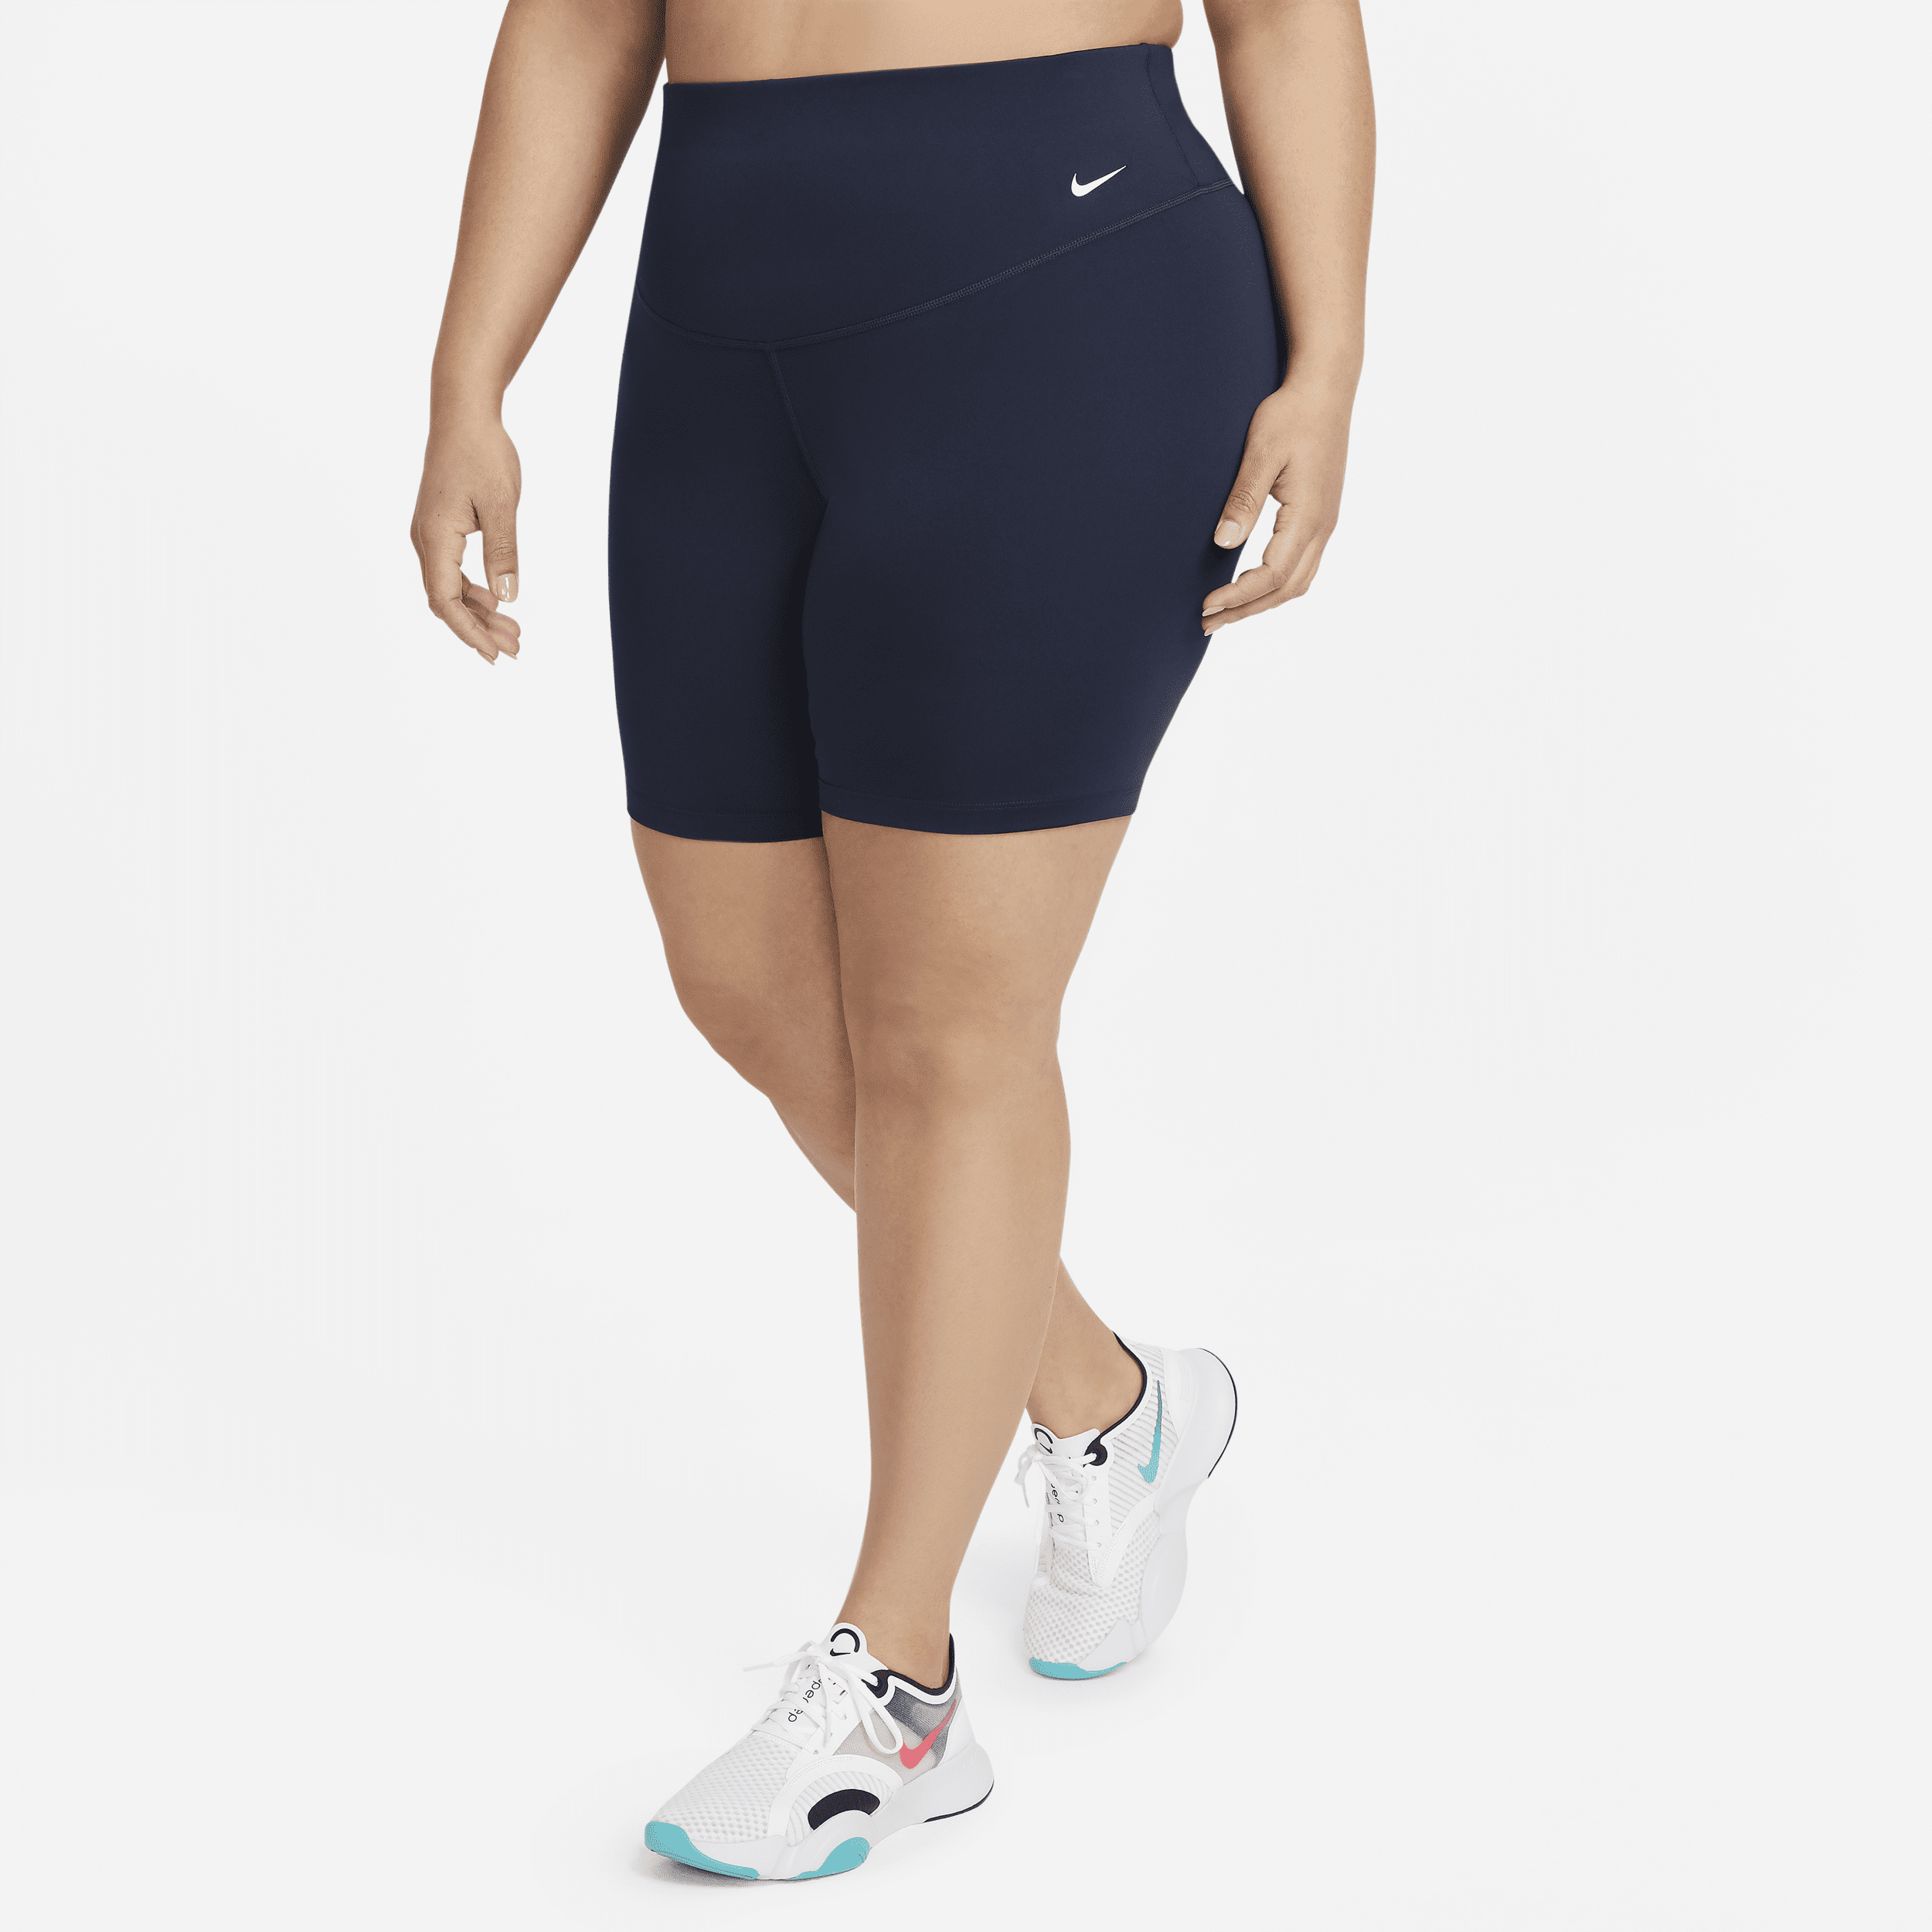 Spodenki damskie do jazdy na rowerze ze średnim stanem 18 cm Nike One (duże rozmiary) - Niebieski